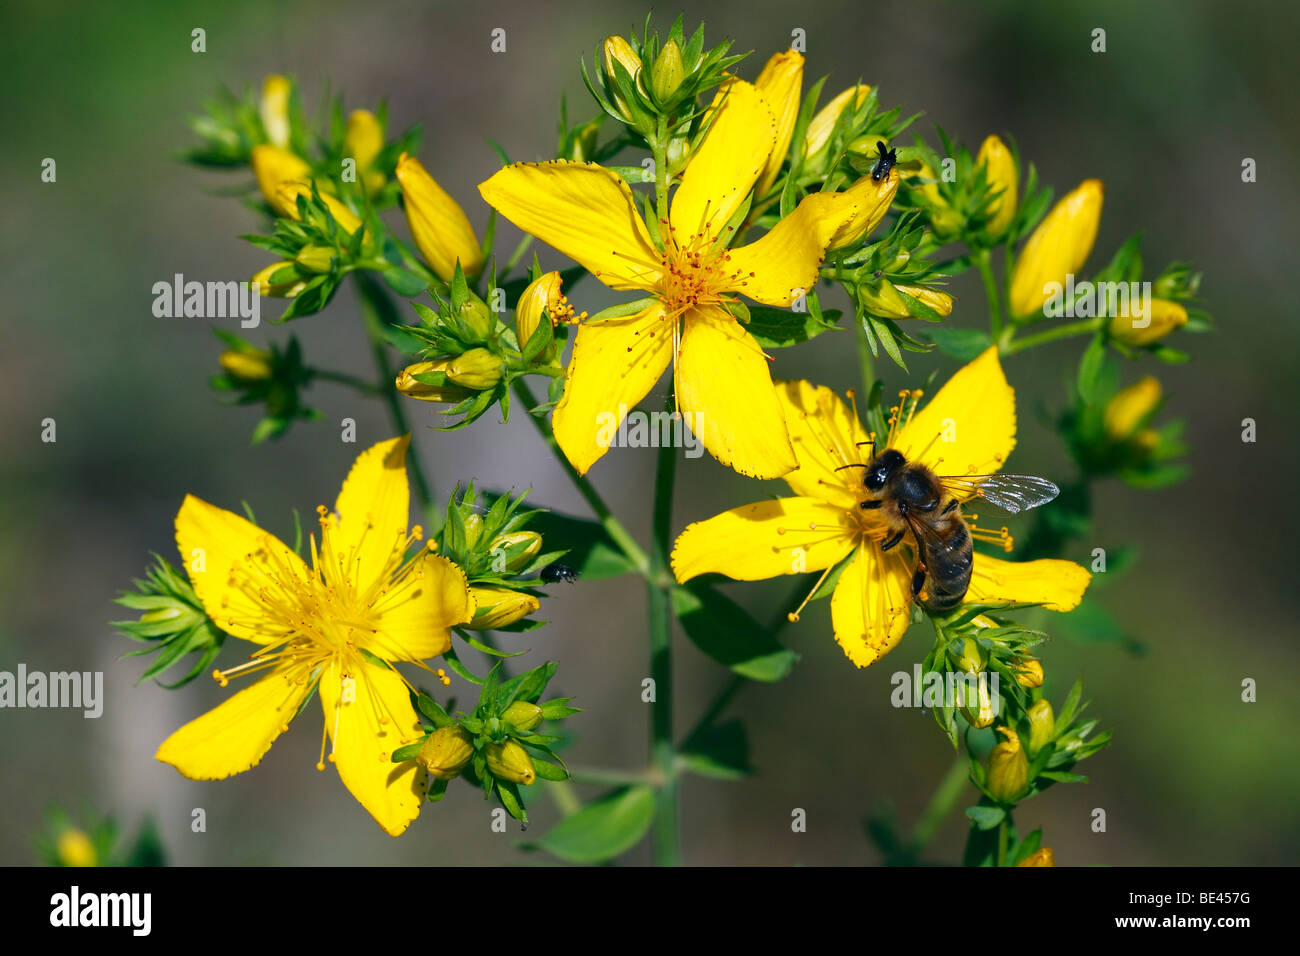 Fioritura dell'erba di San Giovanni, Brierley Hill's alghe Klamath Weed (Hypericum perforatum), pianta medicinale, con il miele delle api (Apis mellifera) Foto Stock